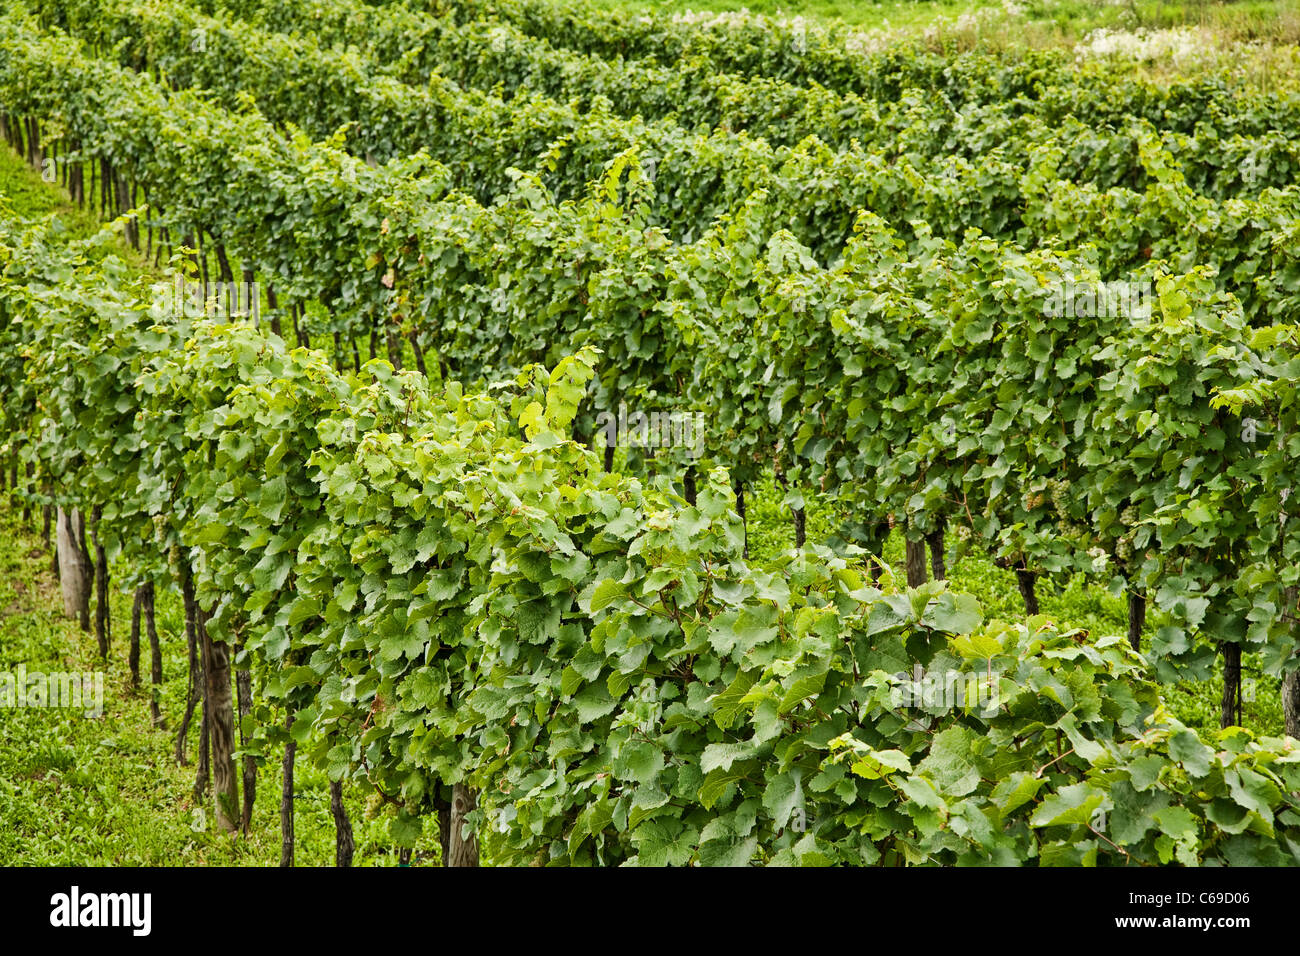 Vineyards in the Wachau Valley at Durnstein, Austria Stock Photo